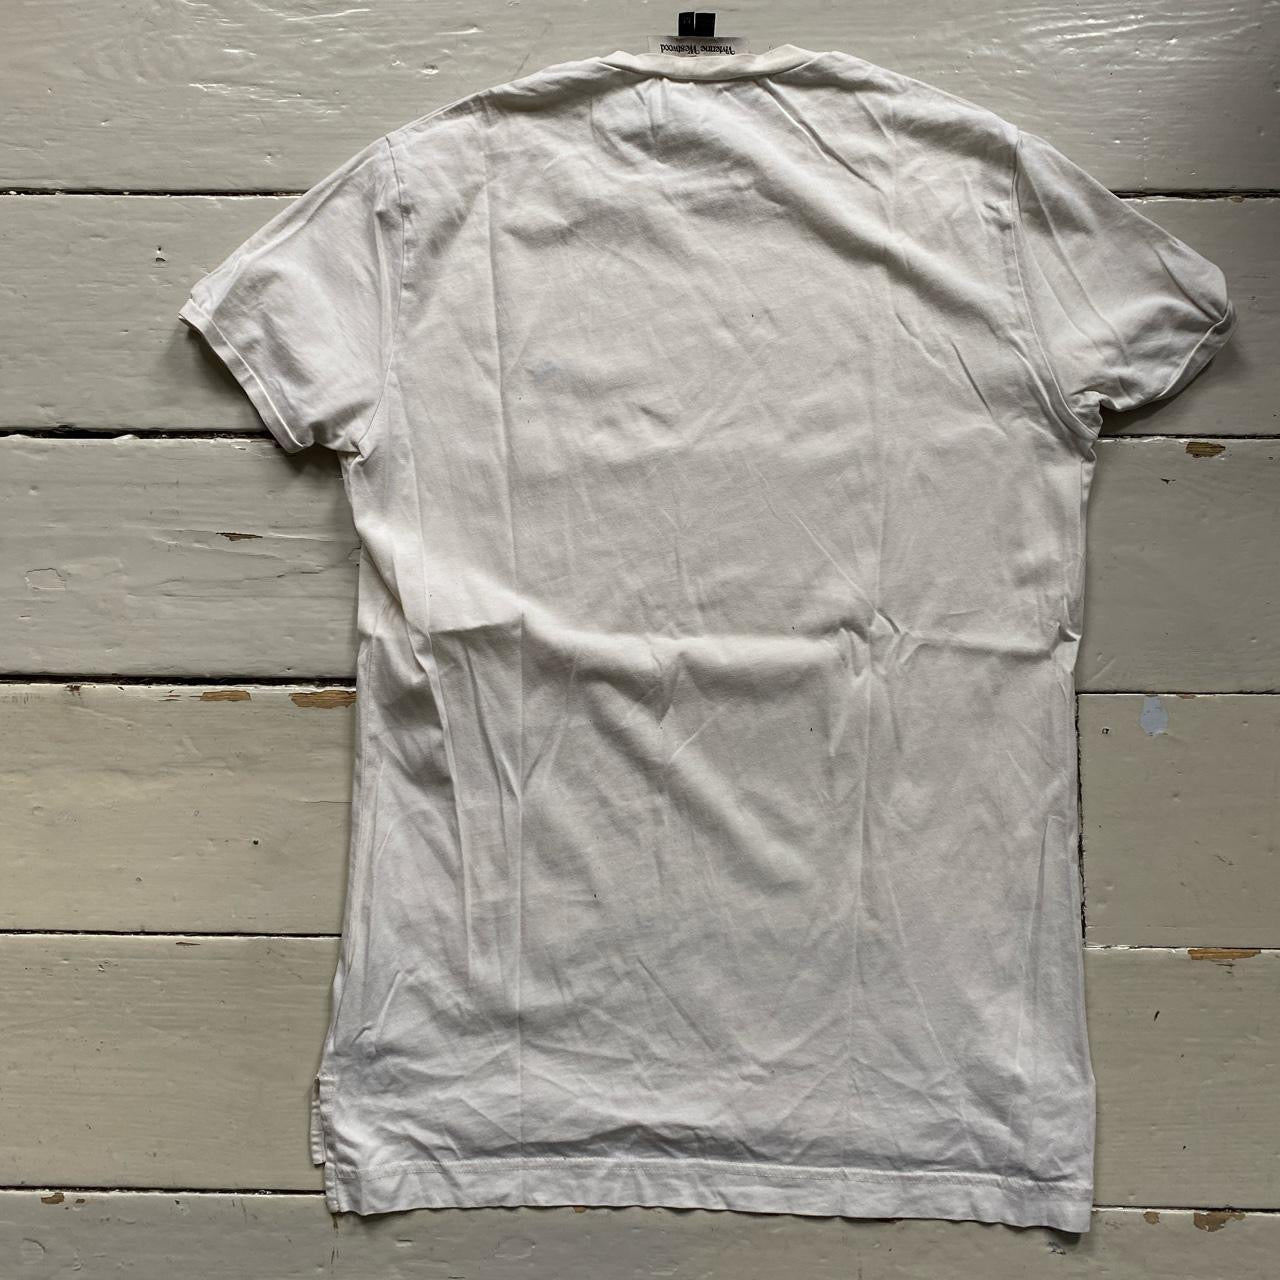 Vivienne Westwood White T Shirt (Medium)